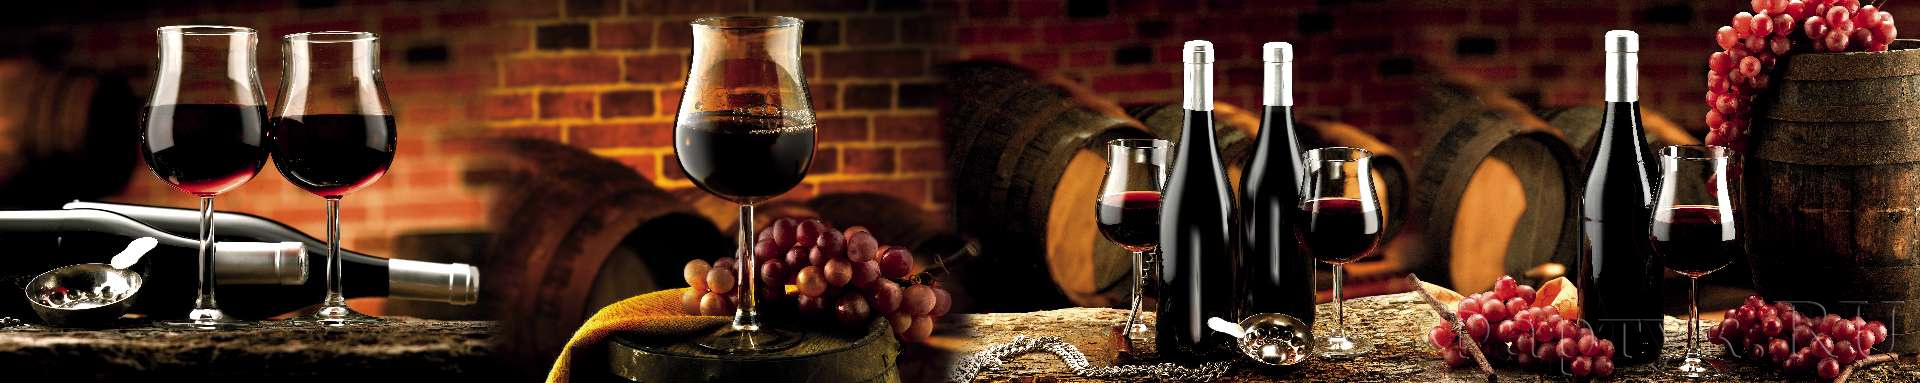 Красное вино, виноград и винные бочки